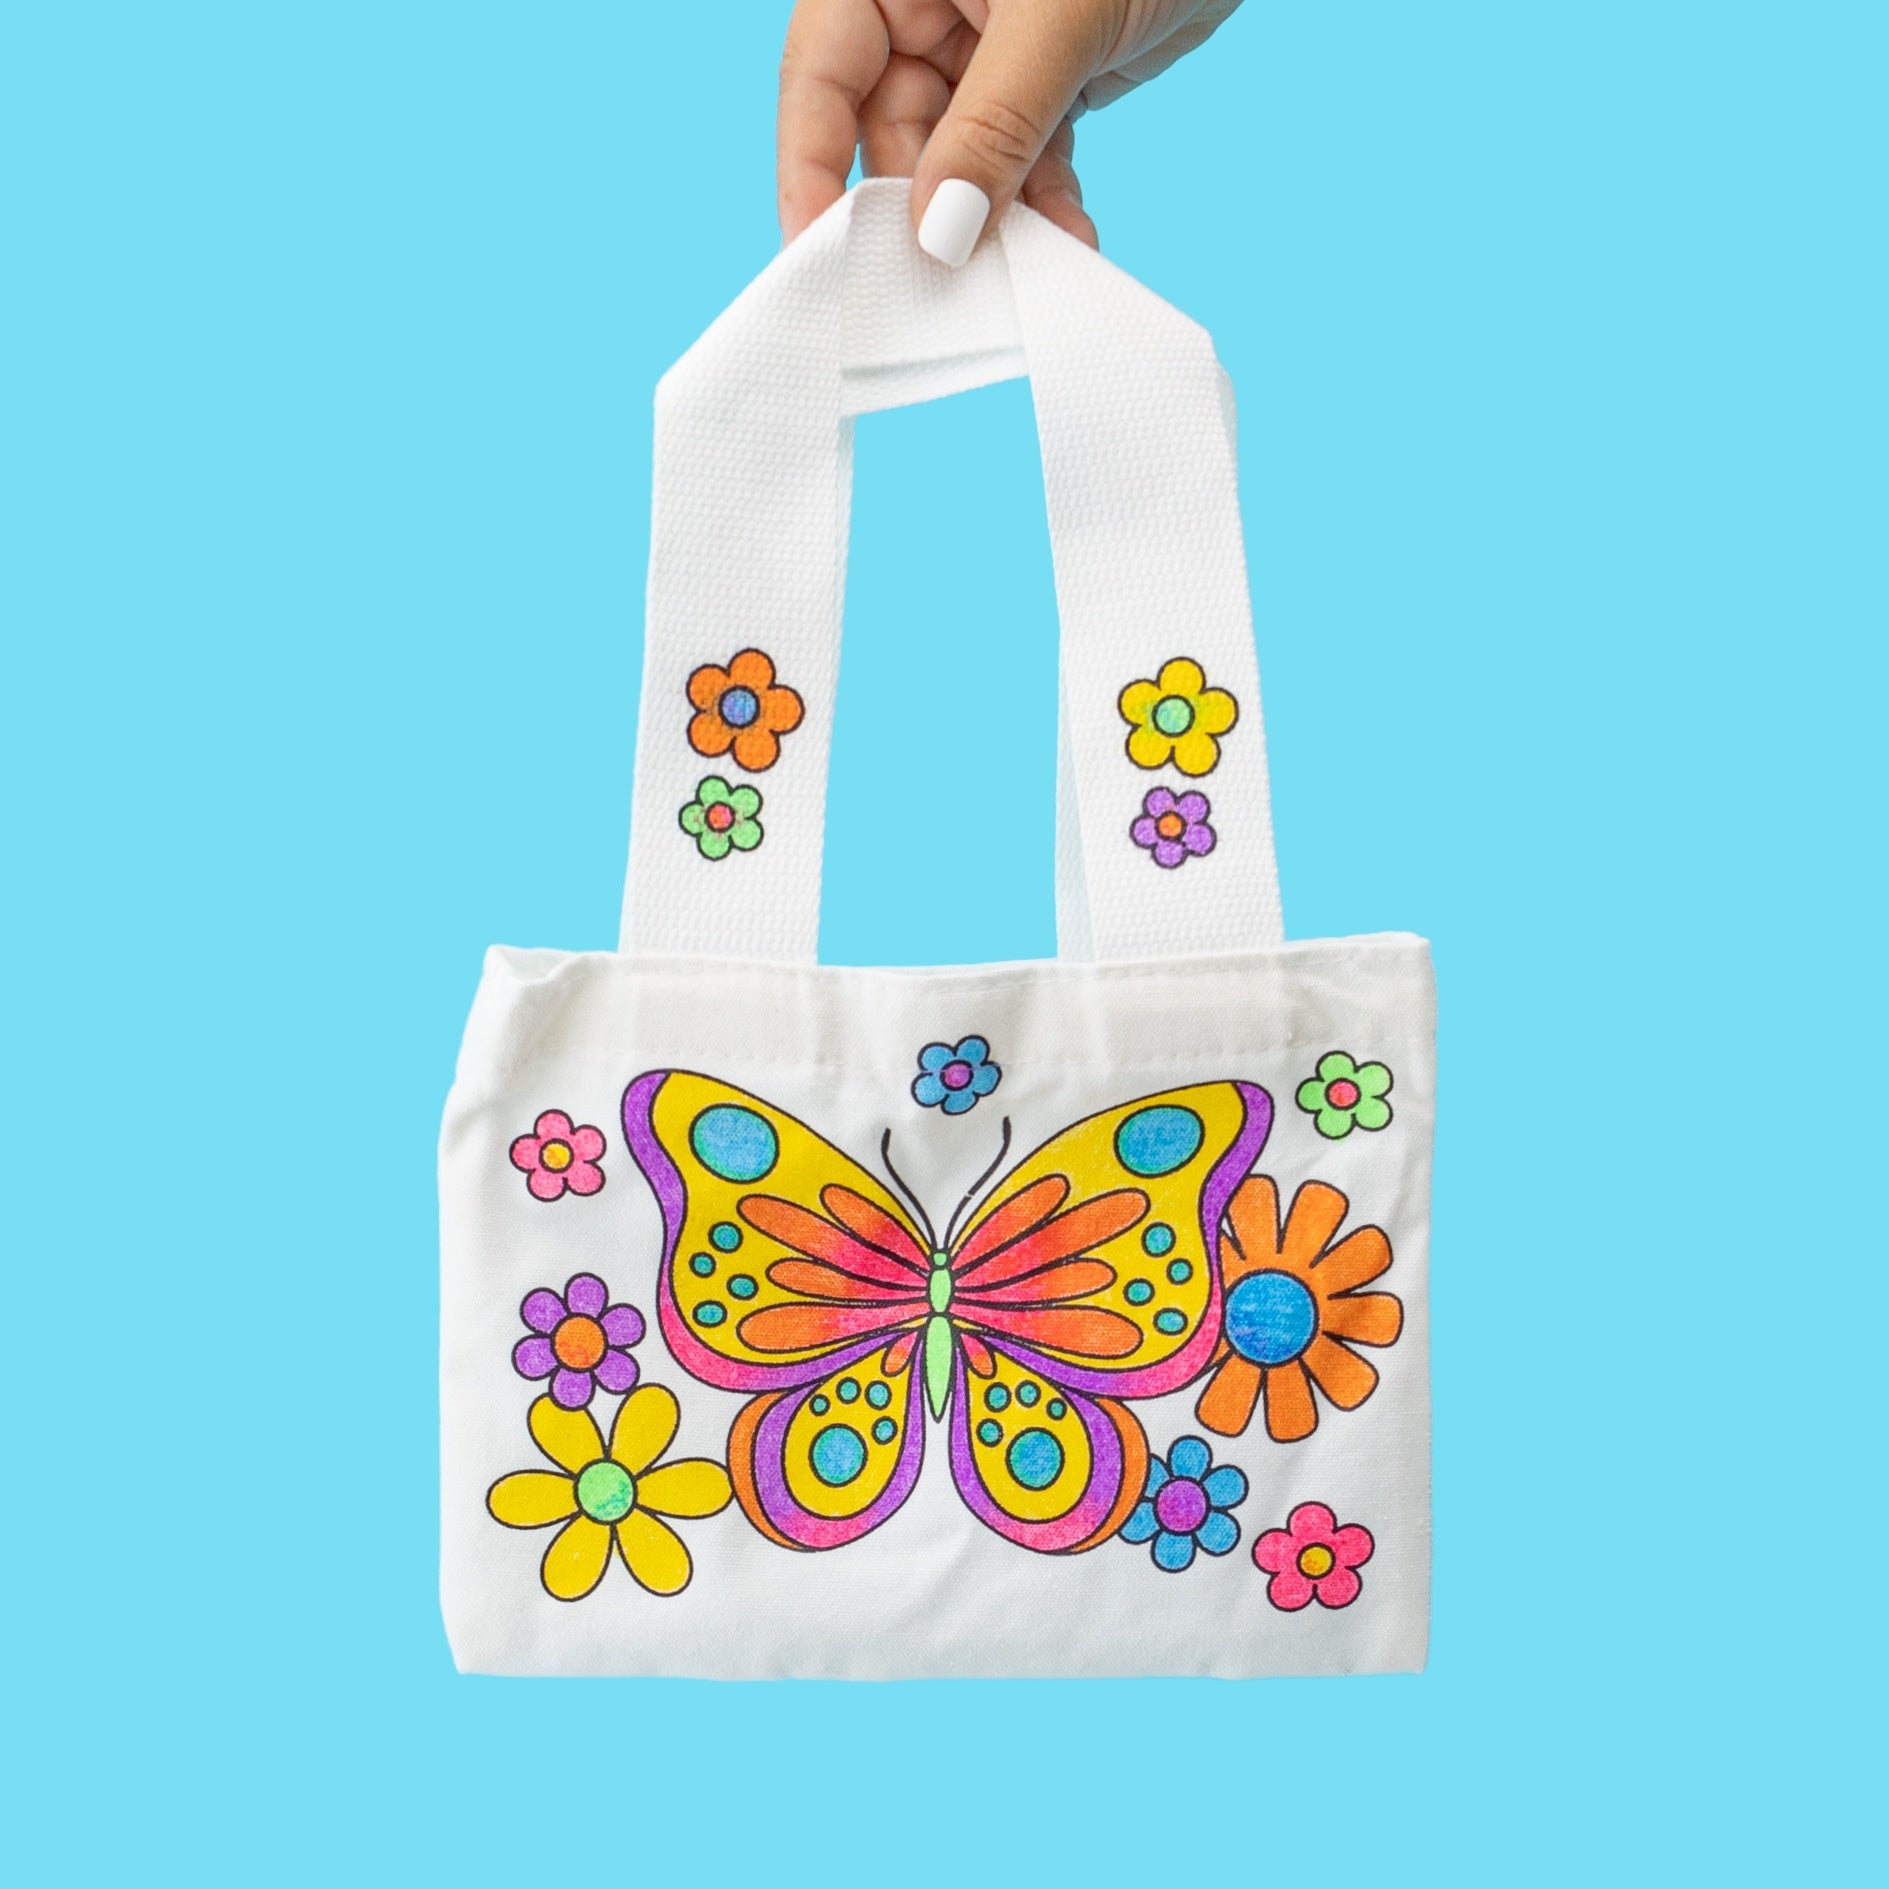 Color & Design Your Own Bag Kids Paper Craft Tote Messenger